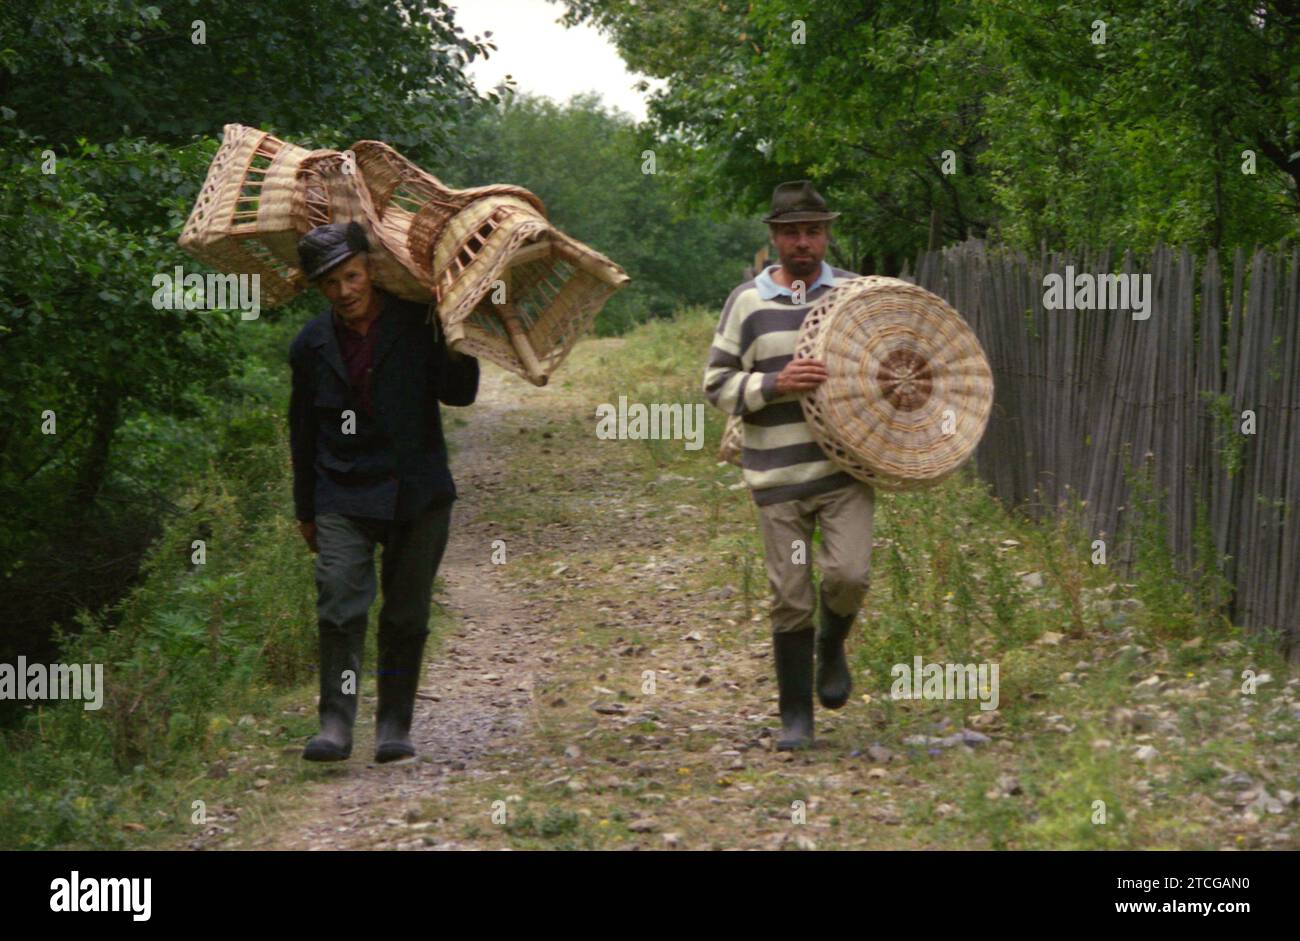 Contea di Neamt, Romania, circa 1998. Due uomini del posto che vendono prodotti a base di ramoscelli. Foto Stock